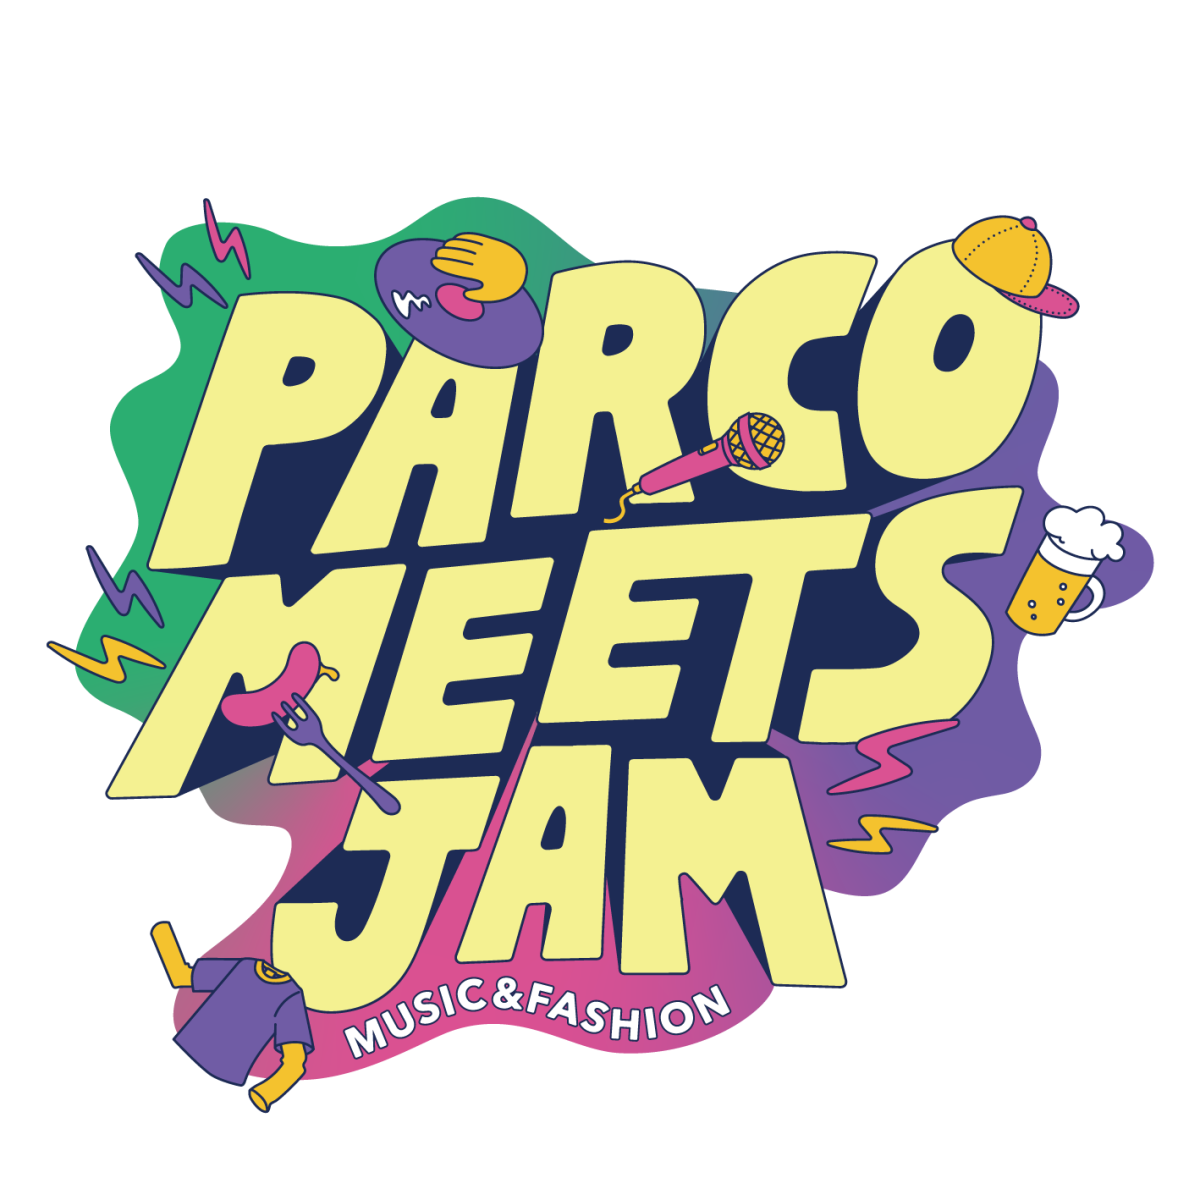 PARCO MEETS JAM